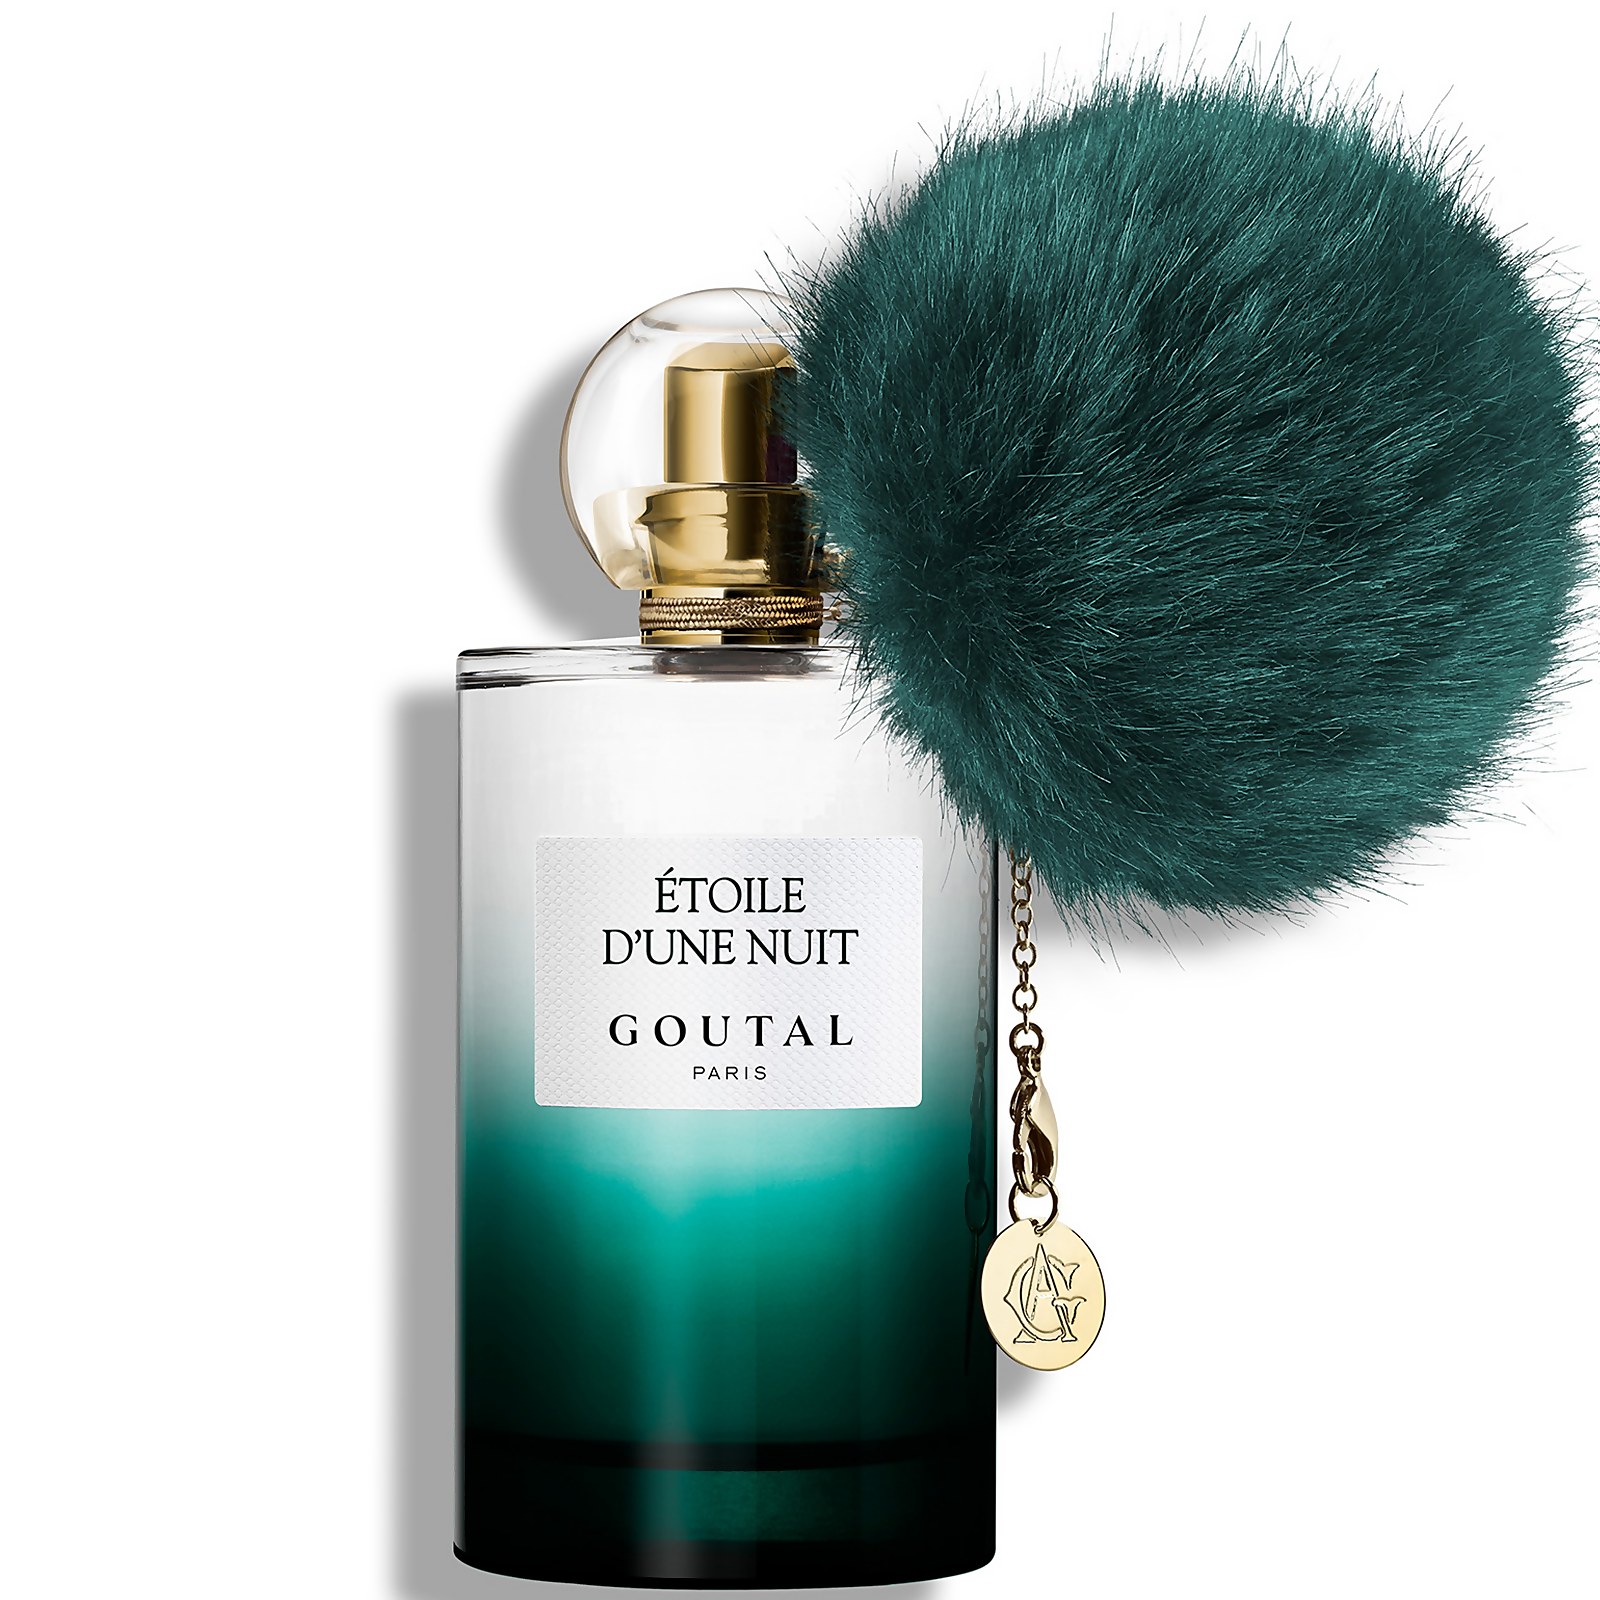 Photos - Women's Fragrance Goutal Paris Goutal Etoile d'Une Nuit Eau de Parfum - 100ml G220110813 